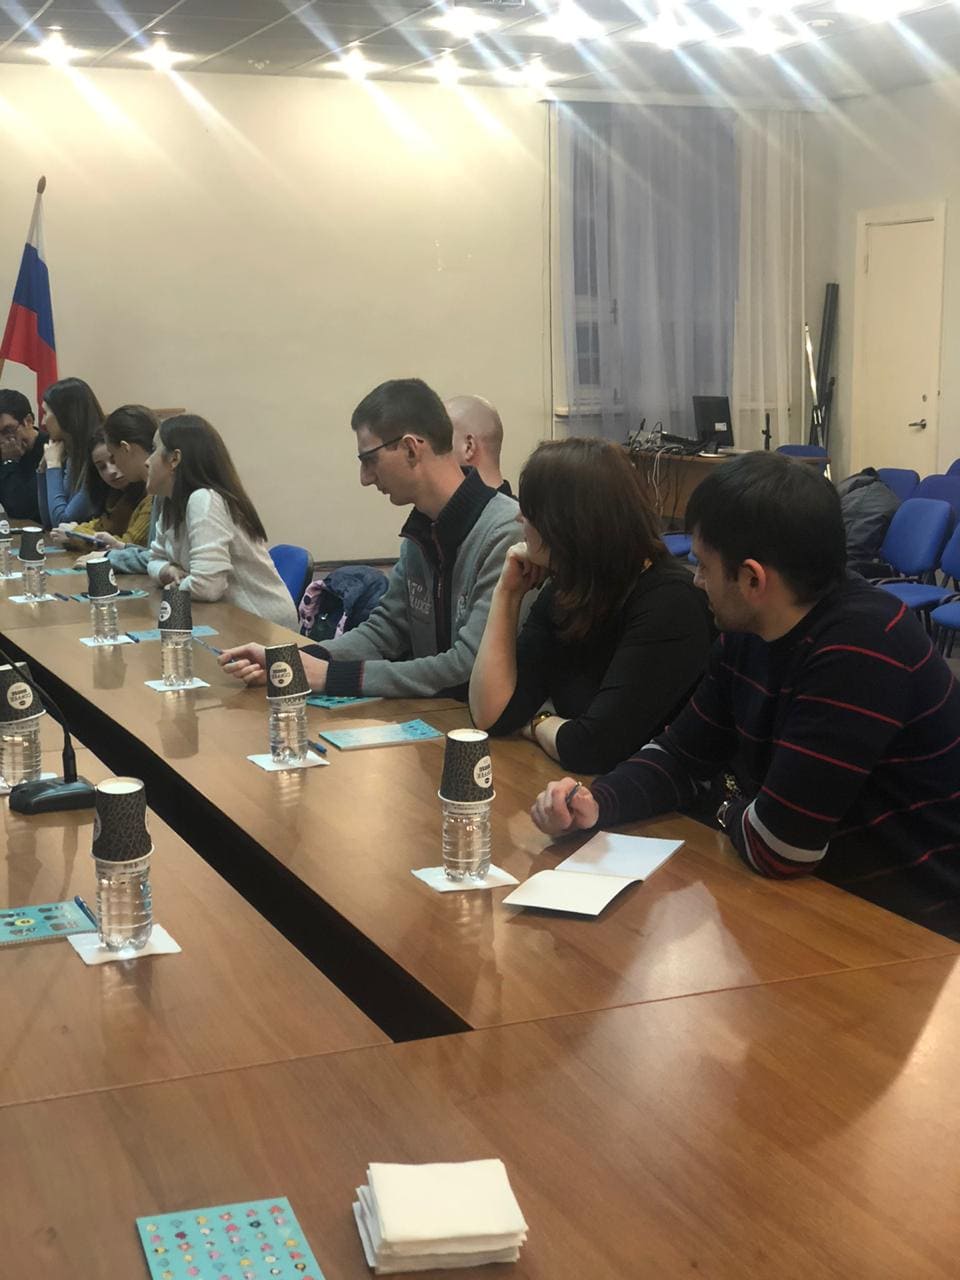 16 декабря 2019 года Фондом поддержки предпринимательства Республики Северная Осетия-Алания организован и проведен семинар «Логистика для экспортеров»   образовательной программы Российского экспортного центра